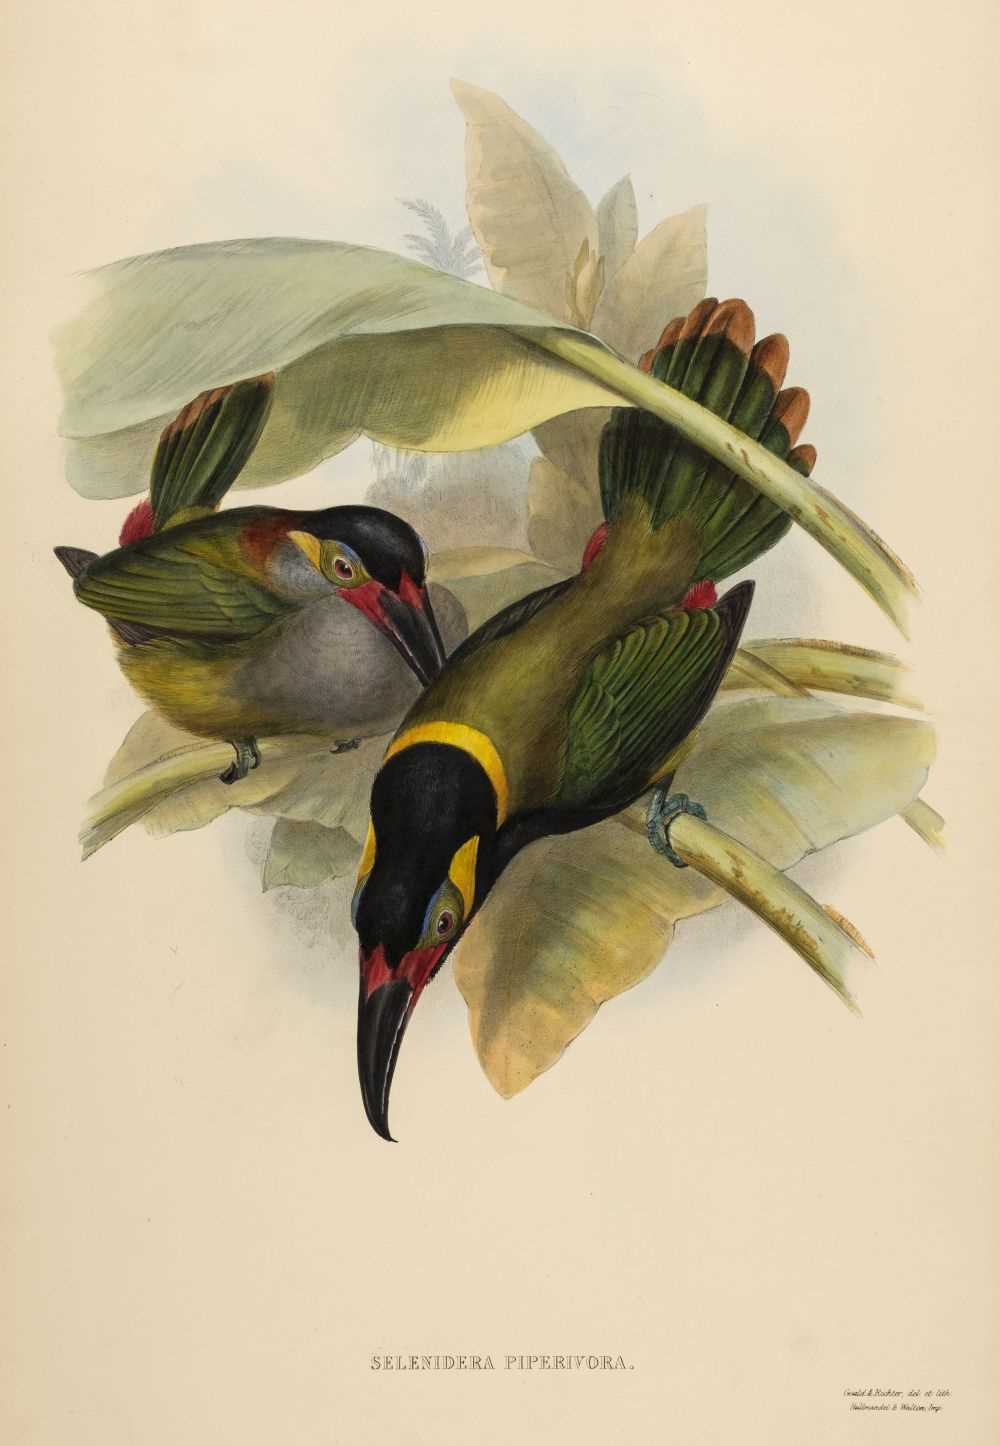 Lot 75 - Gould (John). Selenidera Piperivora (Guyana Toucanet), 1834